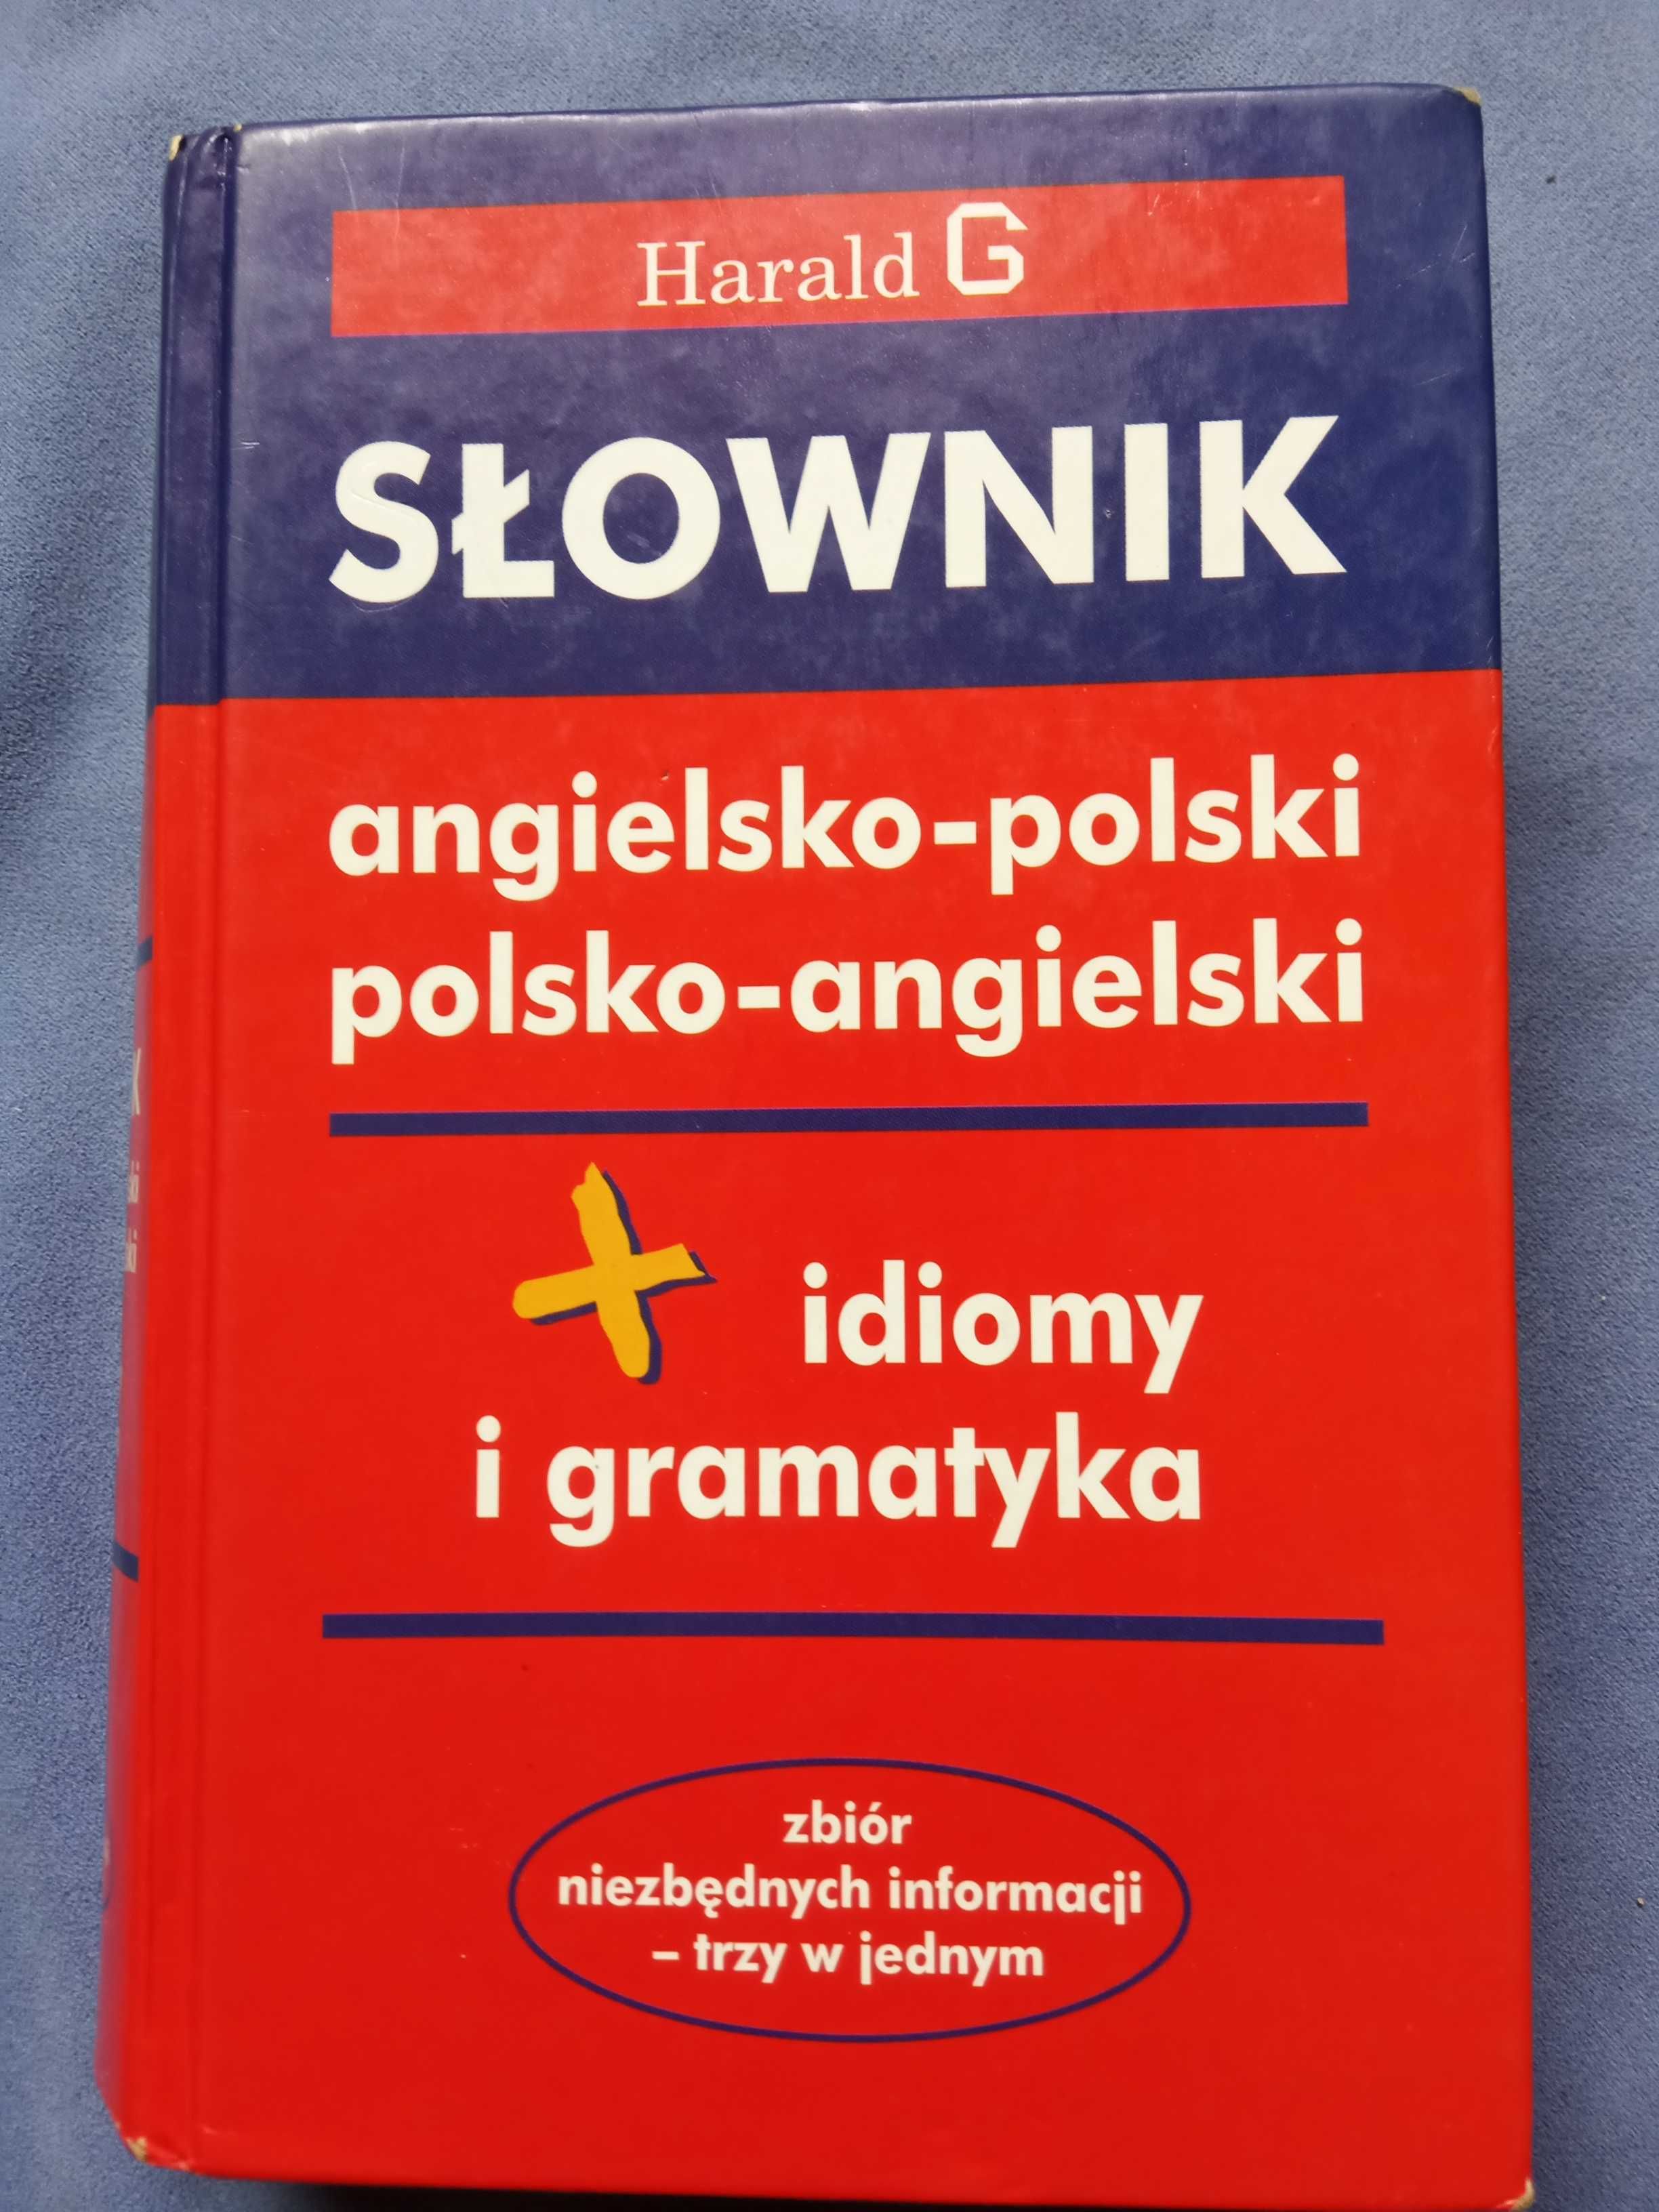 Harald G słownik angielsko-polski polsko-angielski idiomy i gramatyka